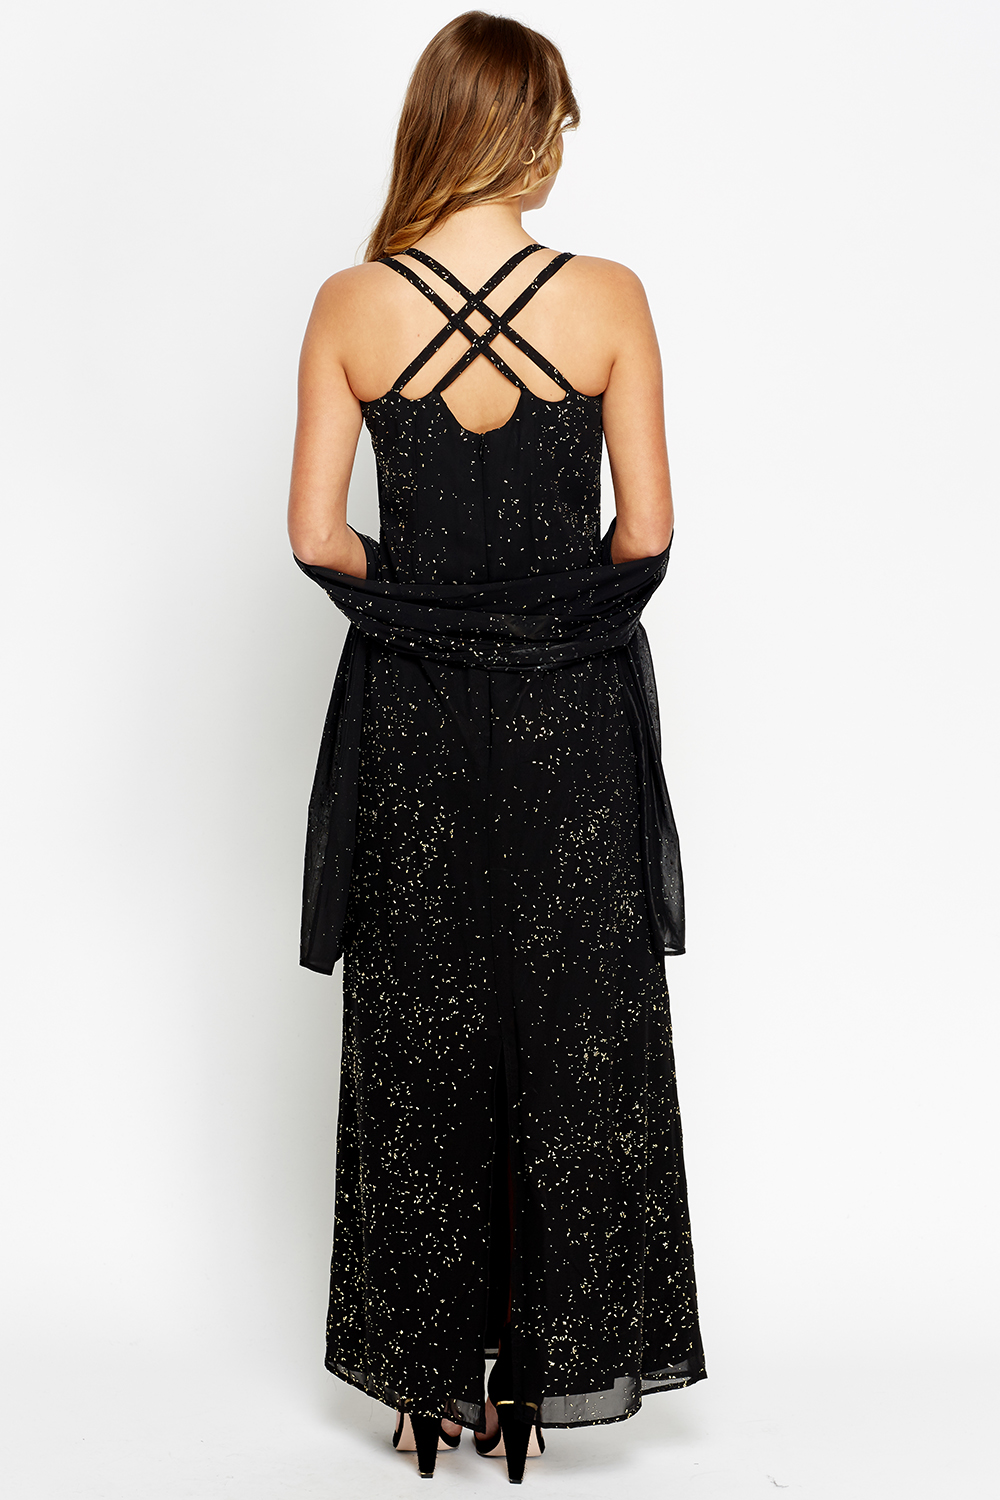 Black Embellished Maxi Evening Dress - Just $6